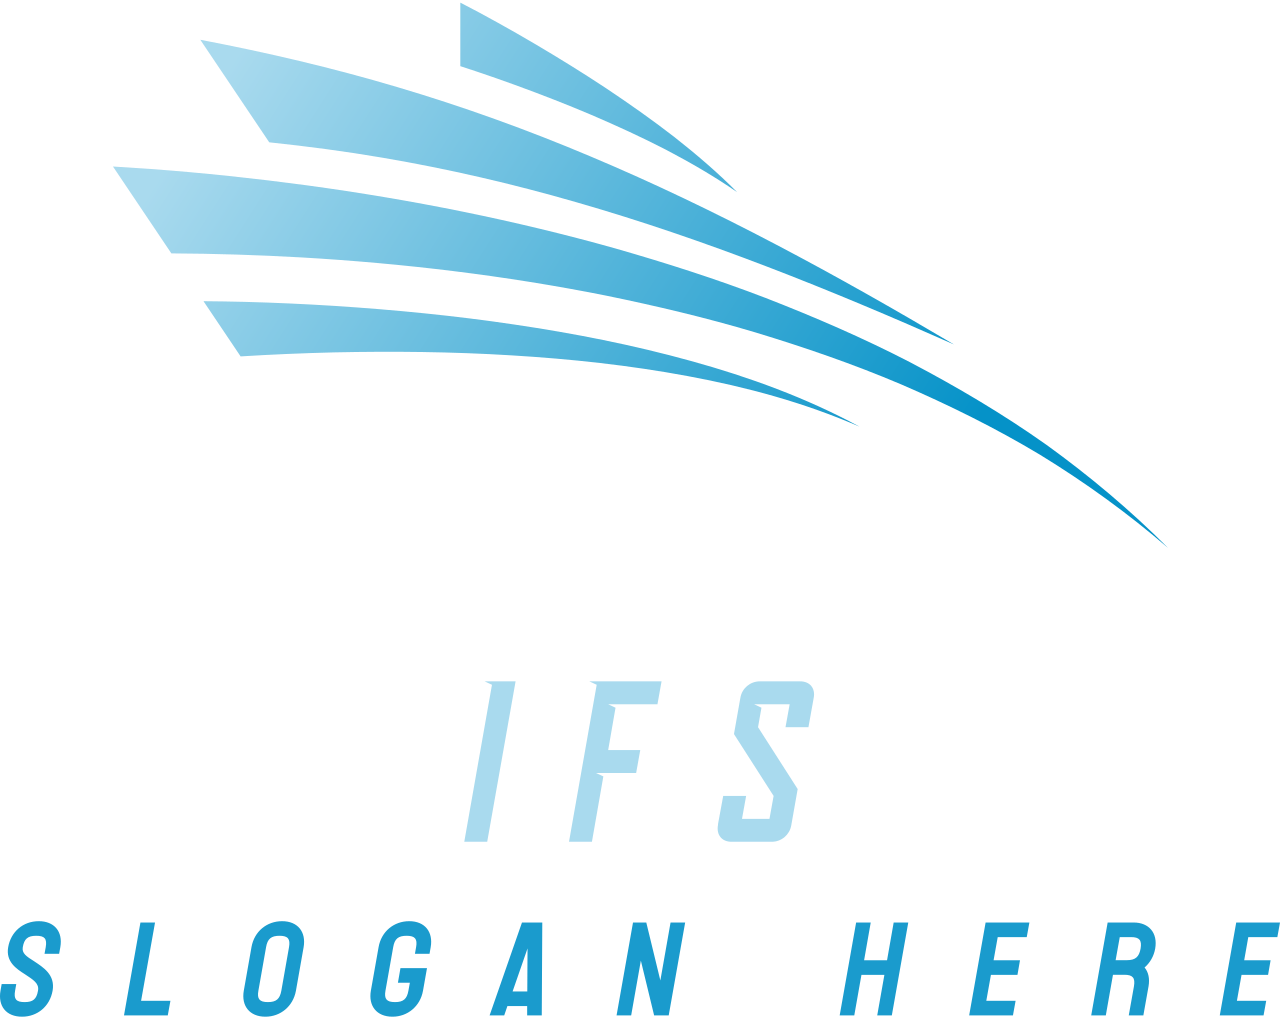 IFS's web page